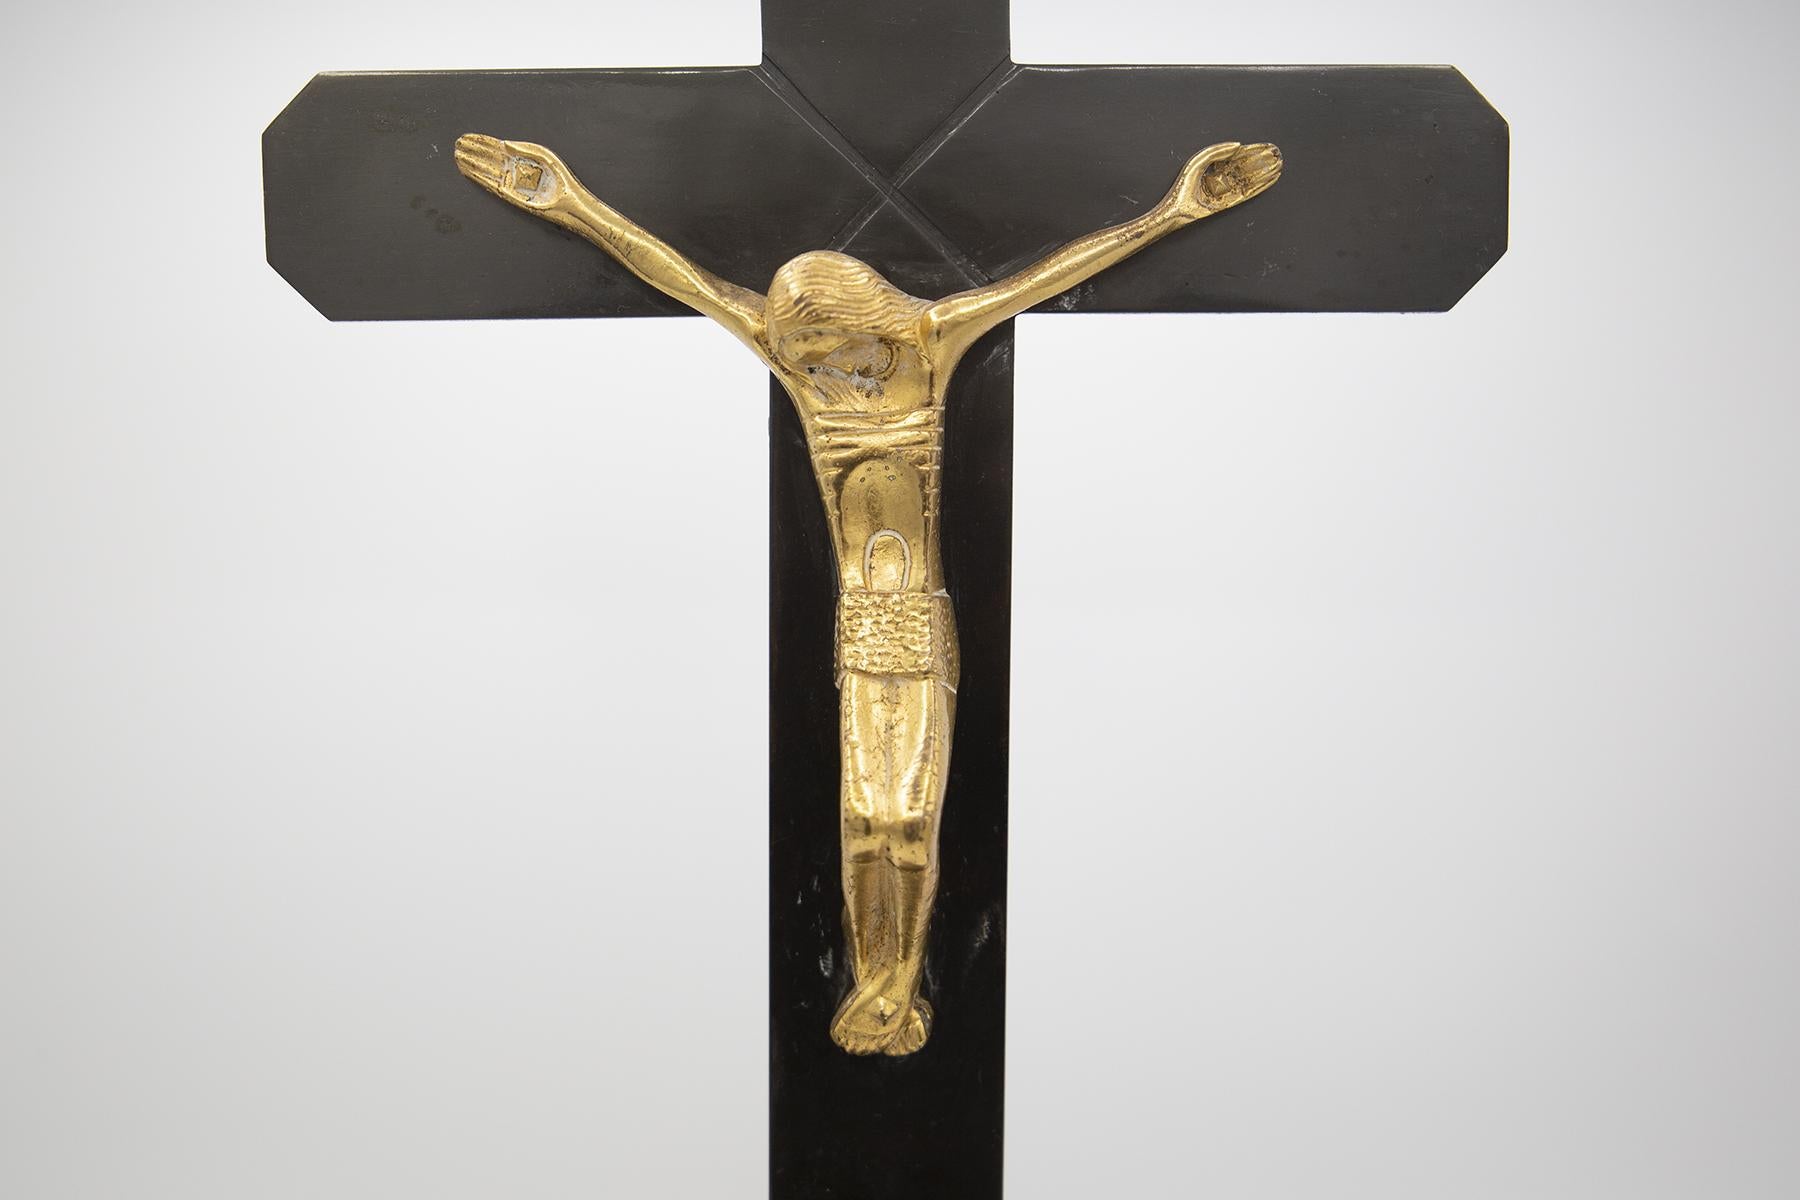 Schönes Vintage-Kruzifix aus feiner italienischer Fertigung aus den 1950er Jahren.
Das alte Kruzifix wurde aus vernickeltem Eisen und vergoldeter Bronze hergestellt. Das Vintage-Kruzifix besteht aus einem geometrischen Sockel mit abgeschrägten